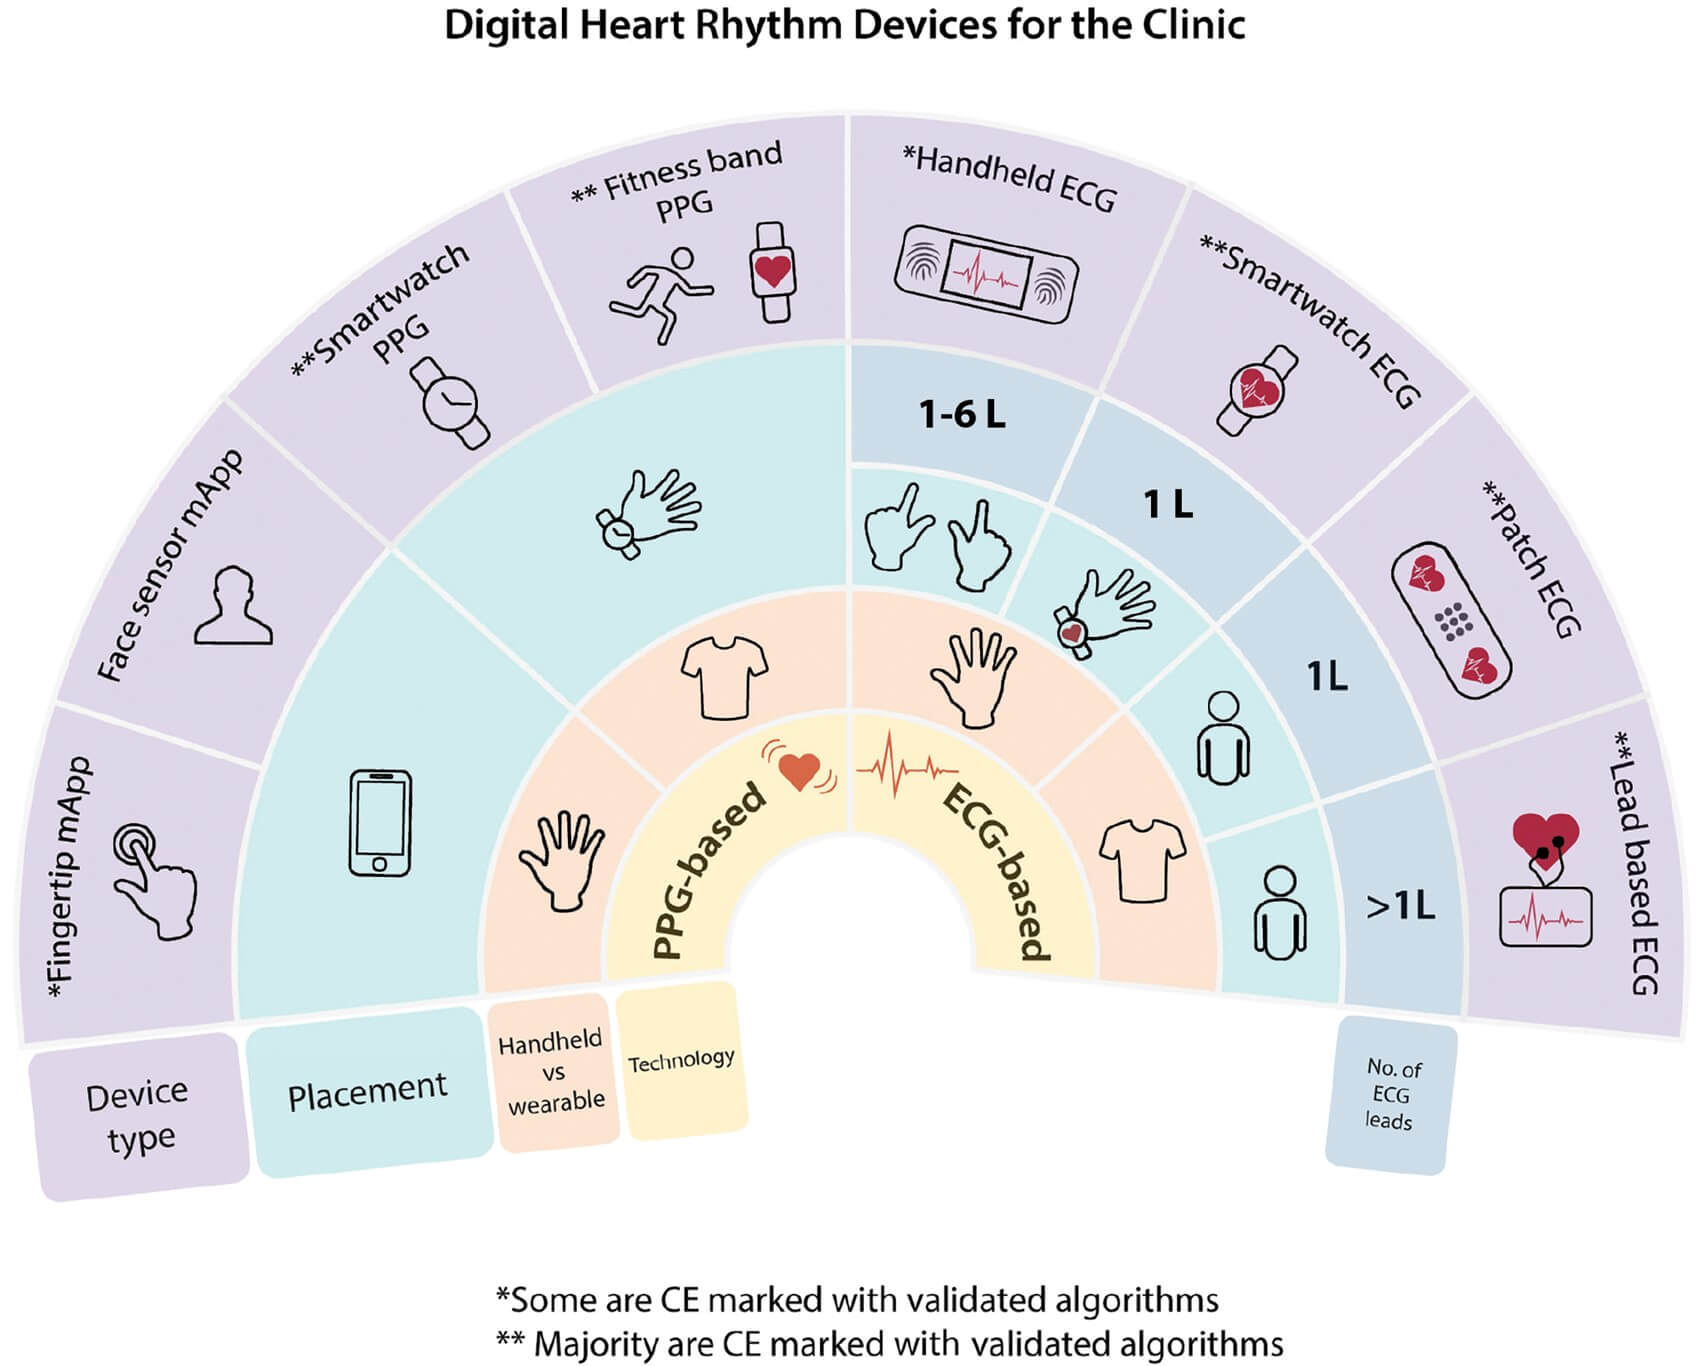 Tipuri de dispozitive digitale utilizate pentru monitorizarea ritmului cardiac